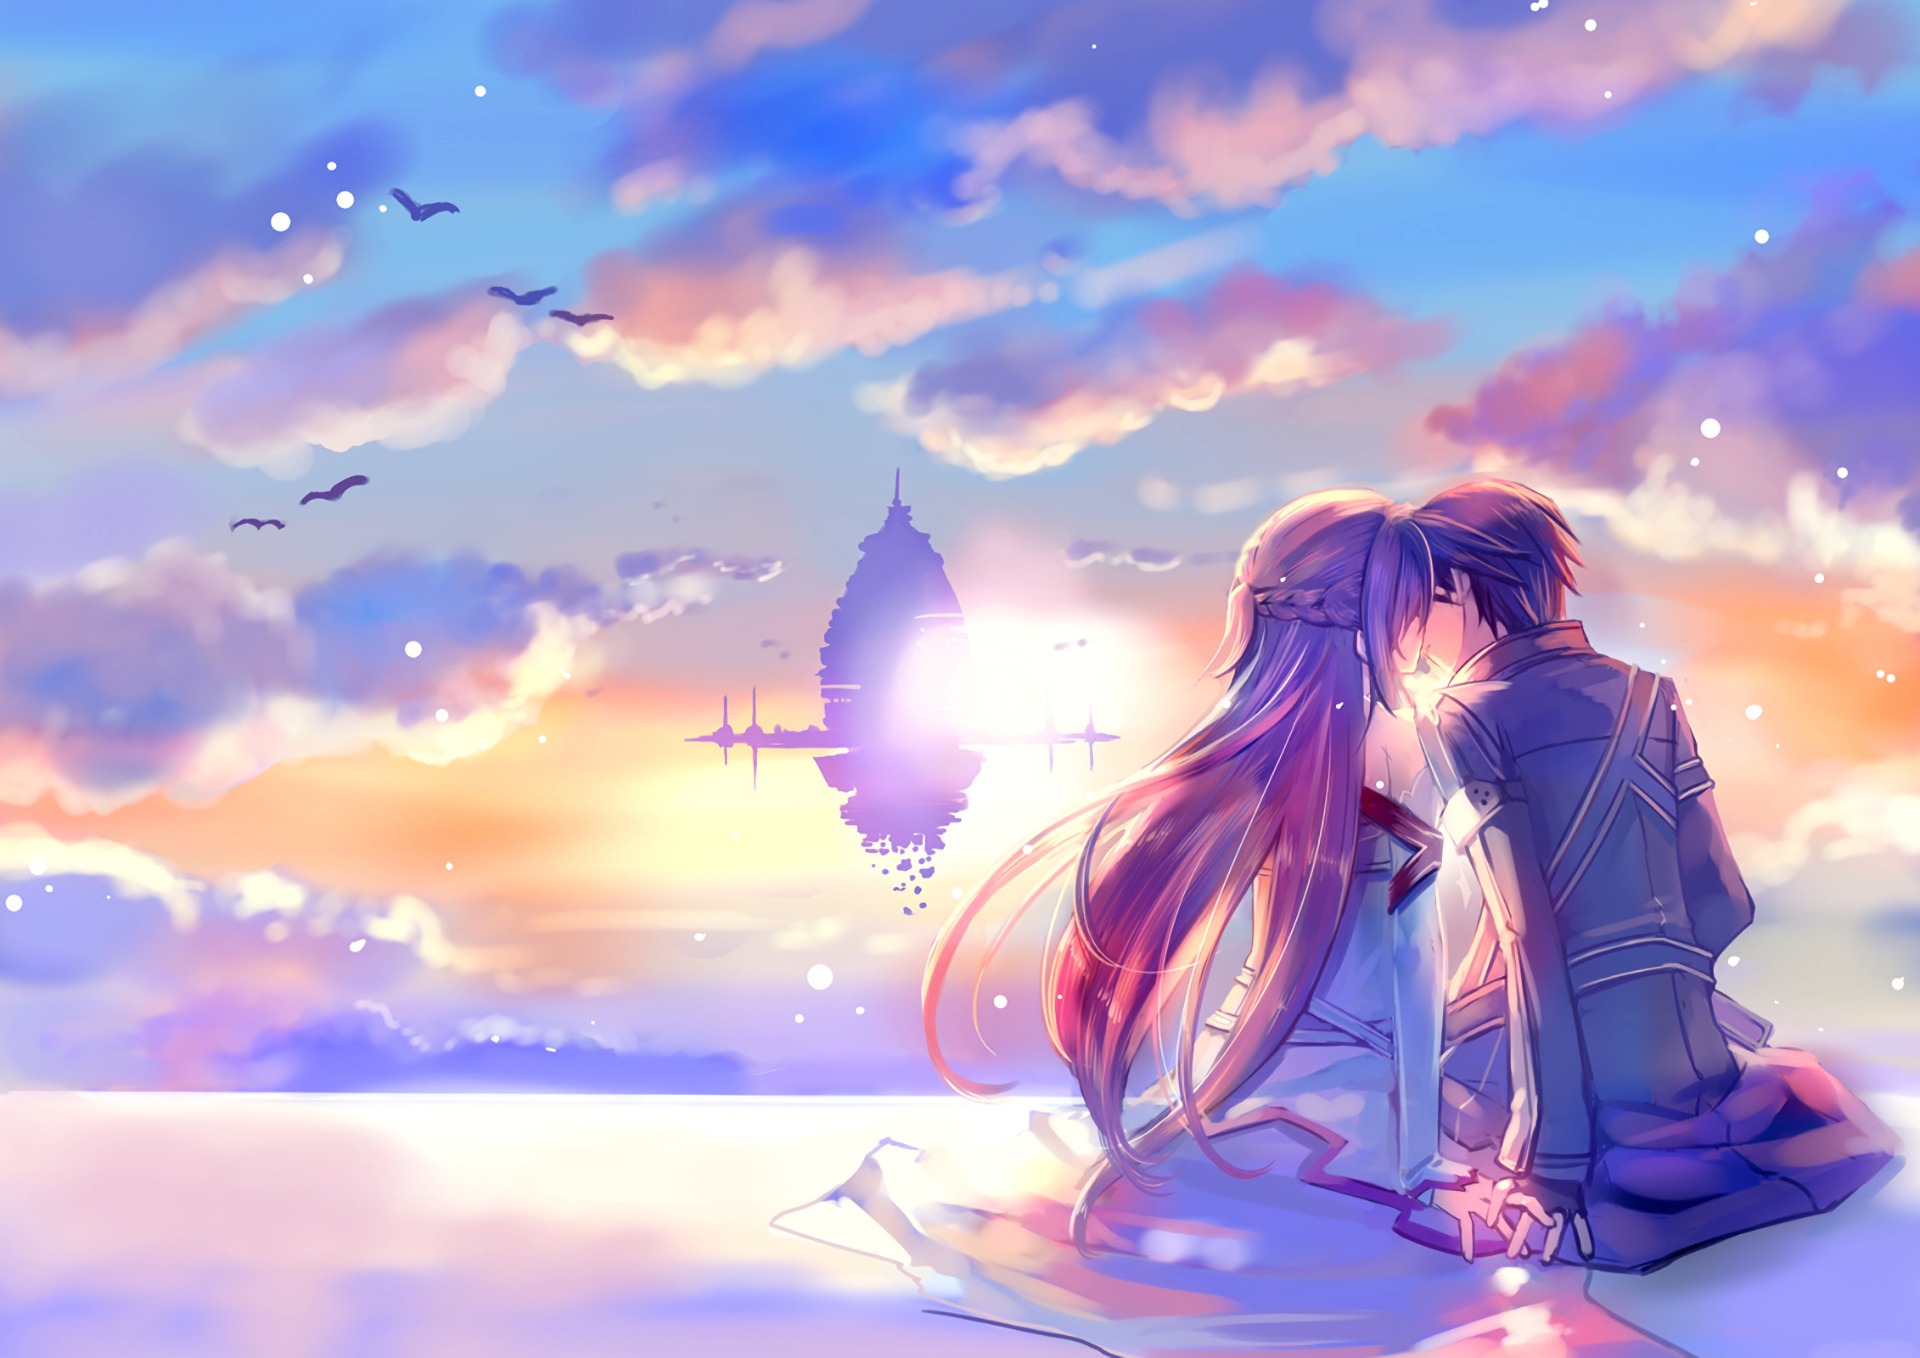 Hình ảnh Kirito và Asuna đẹp và lãng mạn nhất